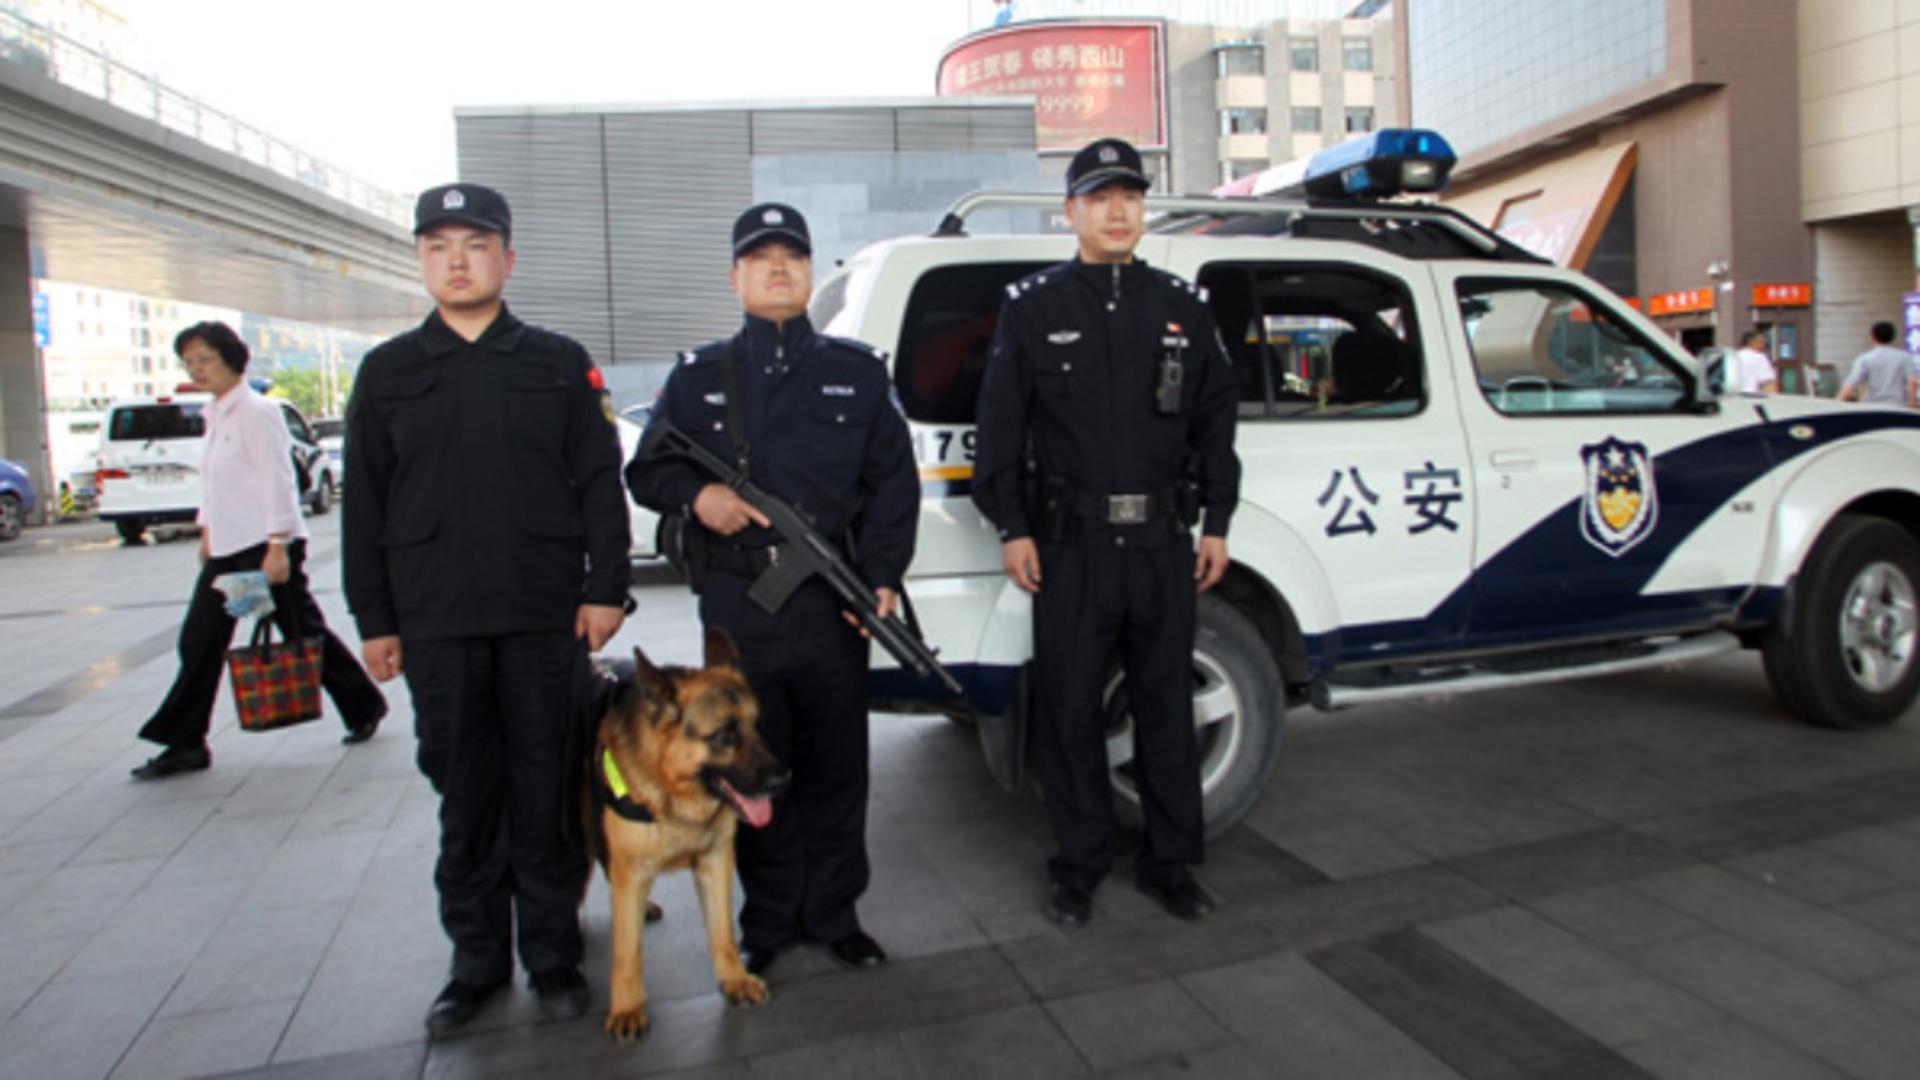 Unitățile-fantomă de poliție ale Chinei în România și alte țări din lume - Acuzații-ȘOC - MAI neagă Foto: Chinadaily.com.cn